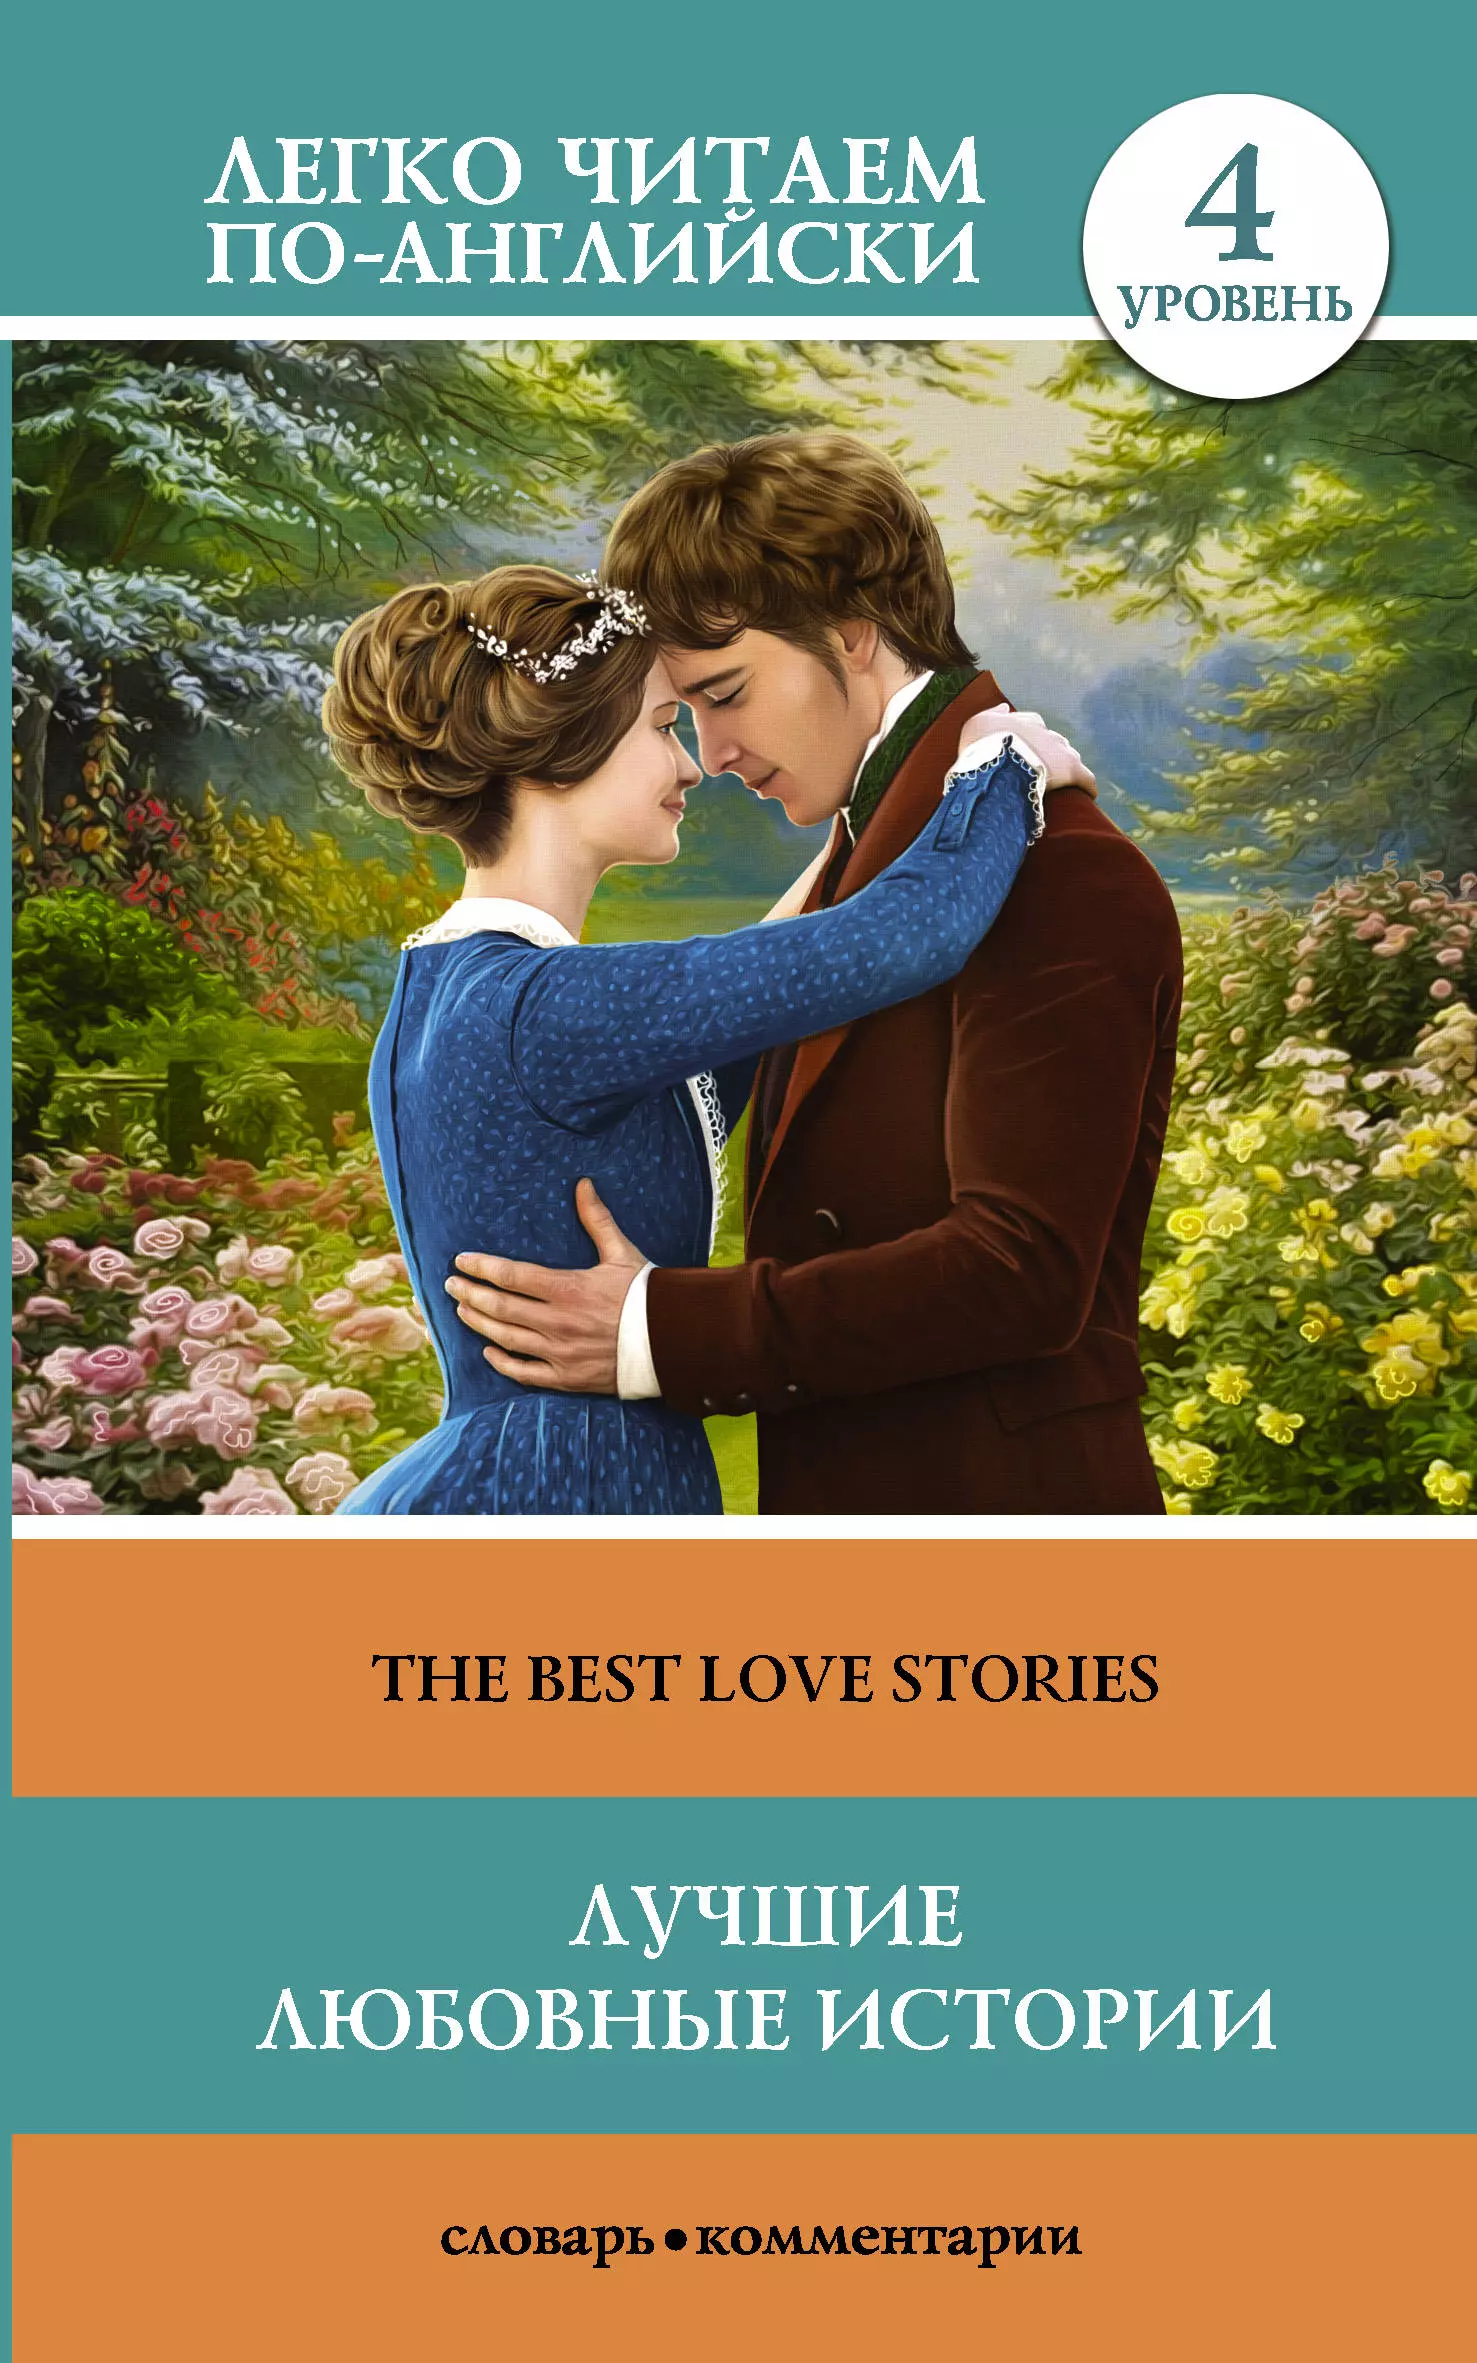 Популярные любовные книги. Популярные книги про любовь. История любви книга. Любовь: рассказы.